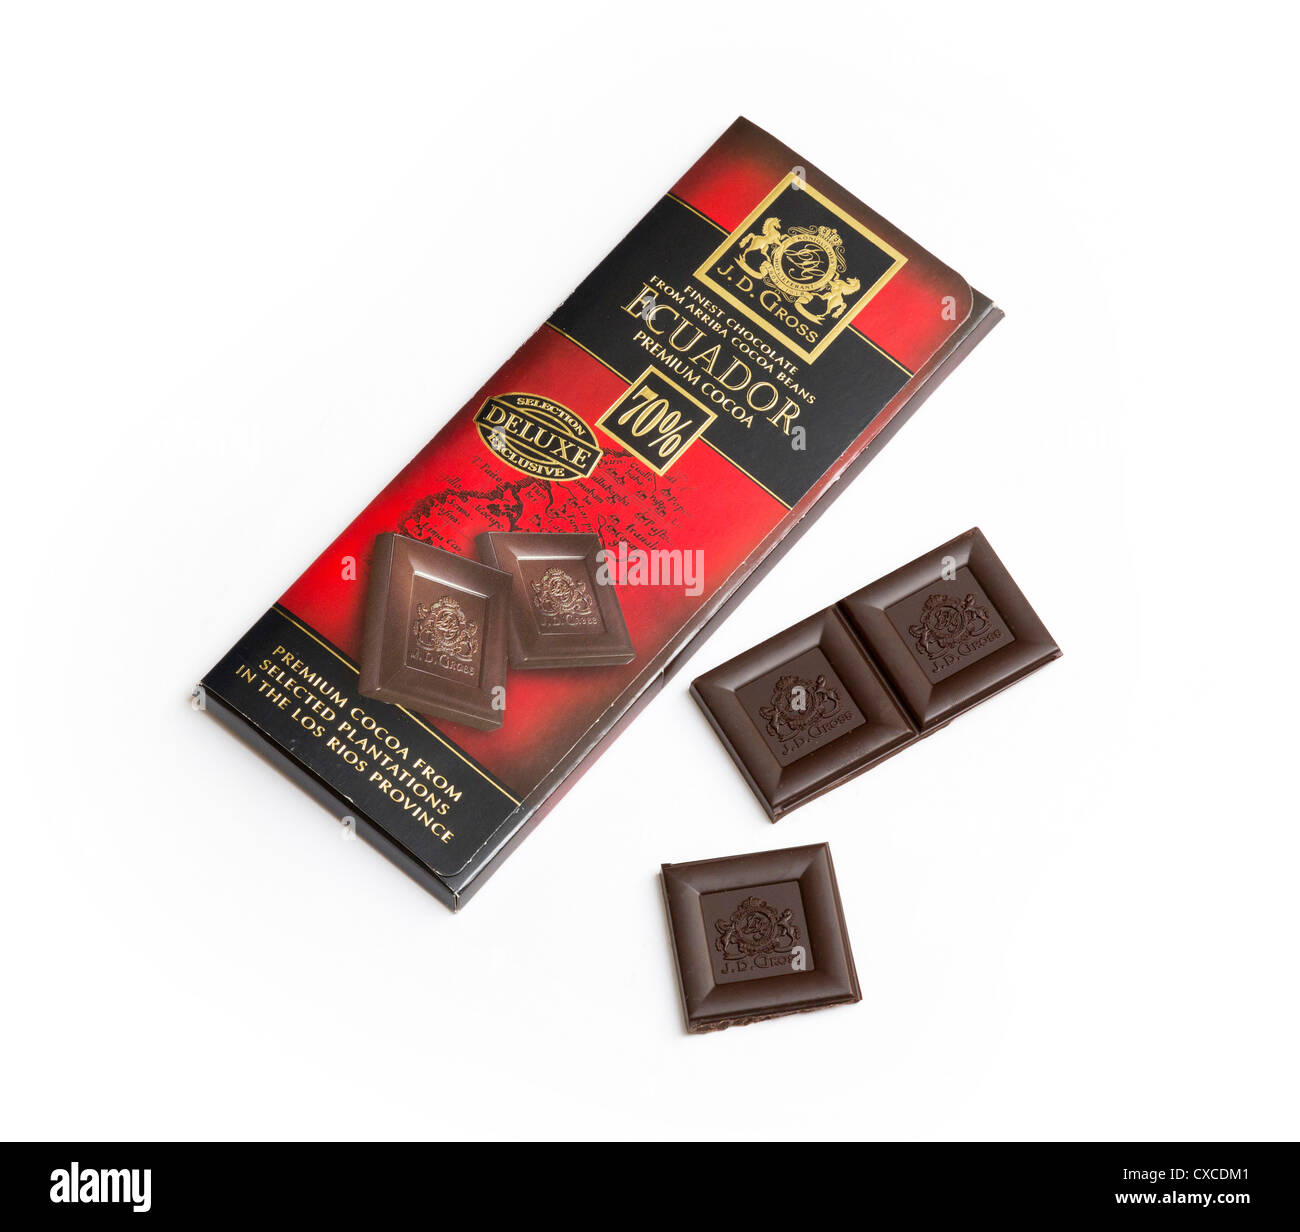 dunkle Schokolade gemacht durch J D Brutto / Rausch Schokolade Stockfoto